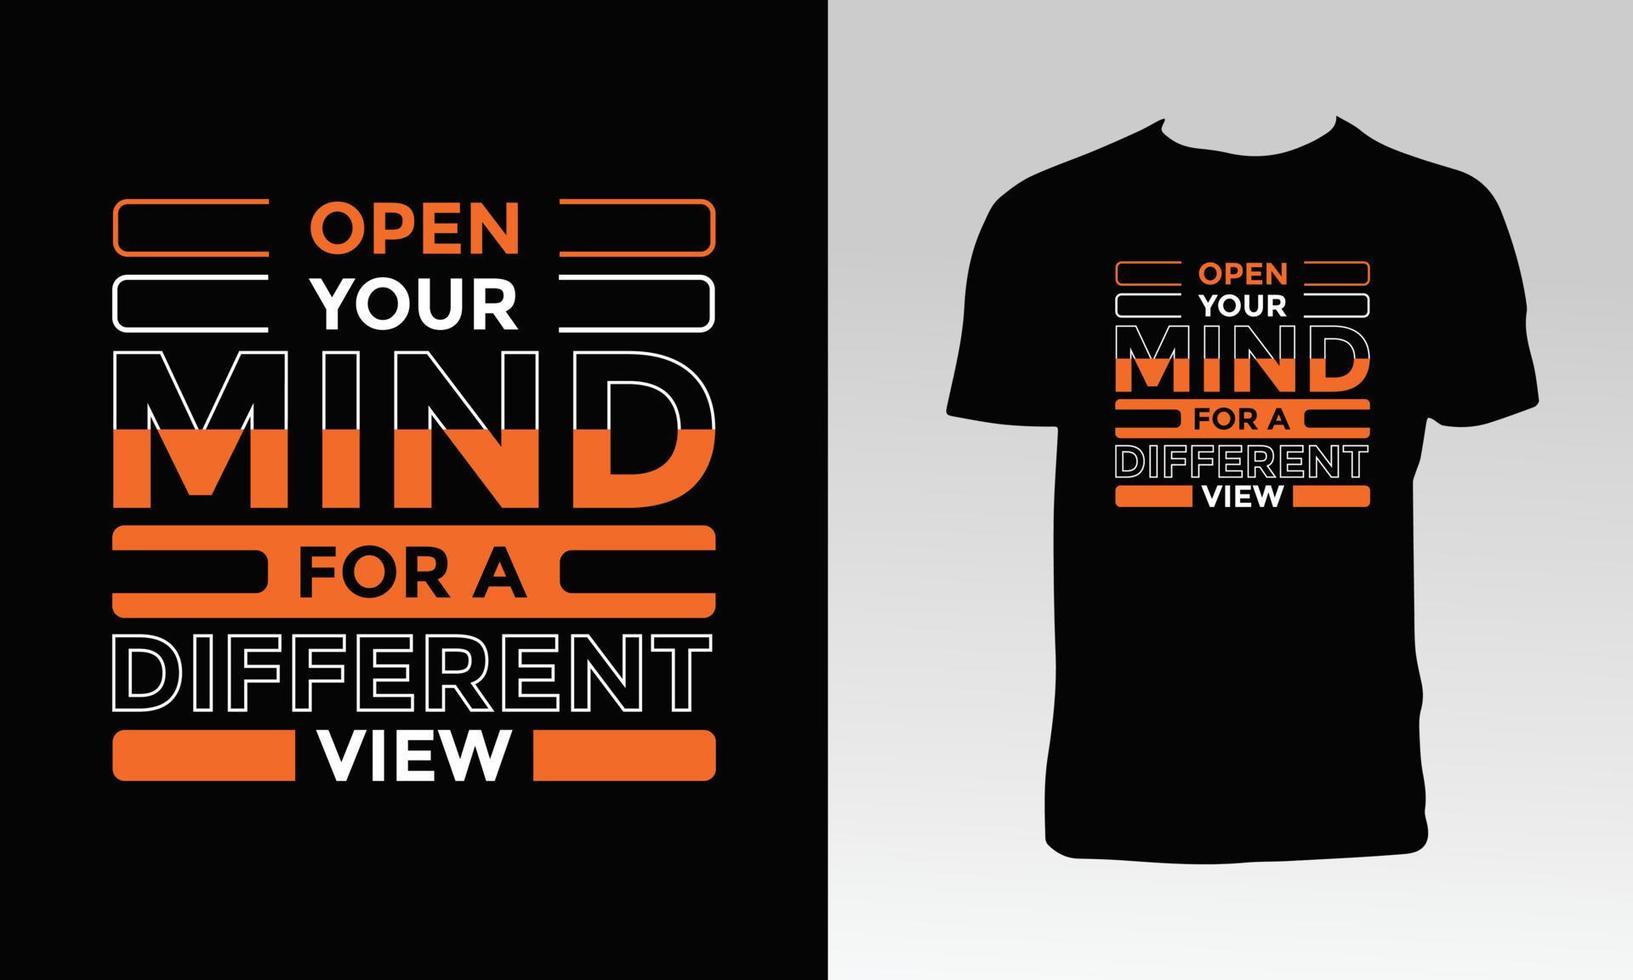 öppna ditt sinne för en annorlunda t-shirtdesign vektor